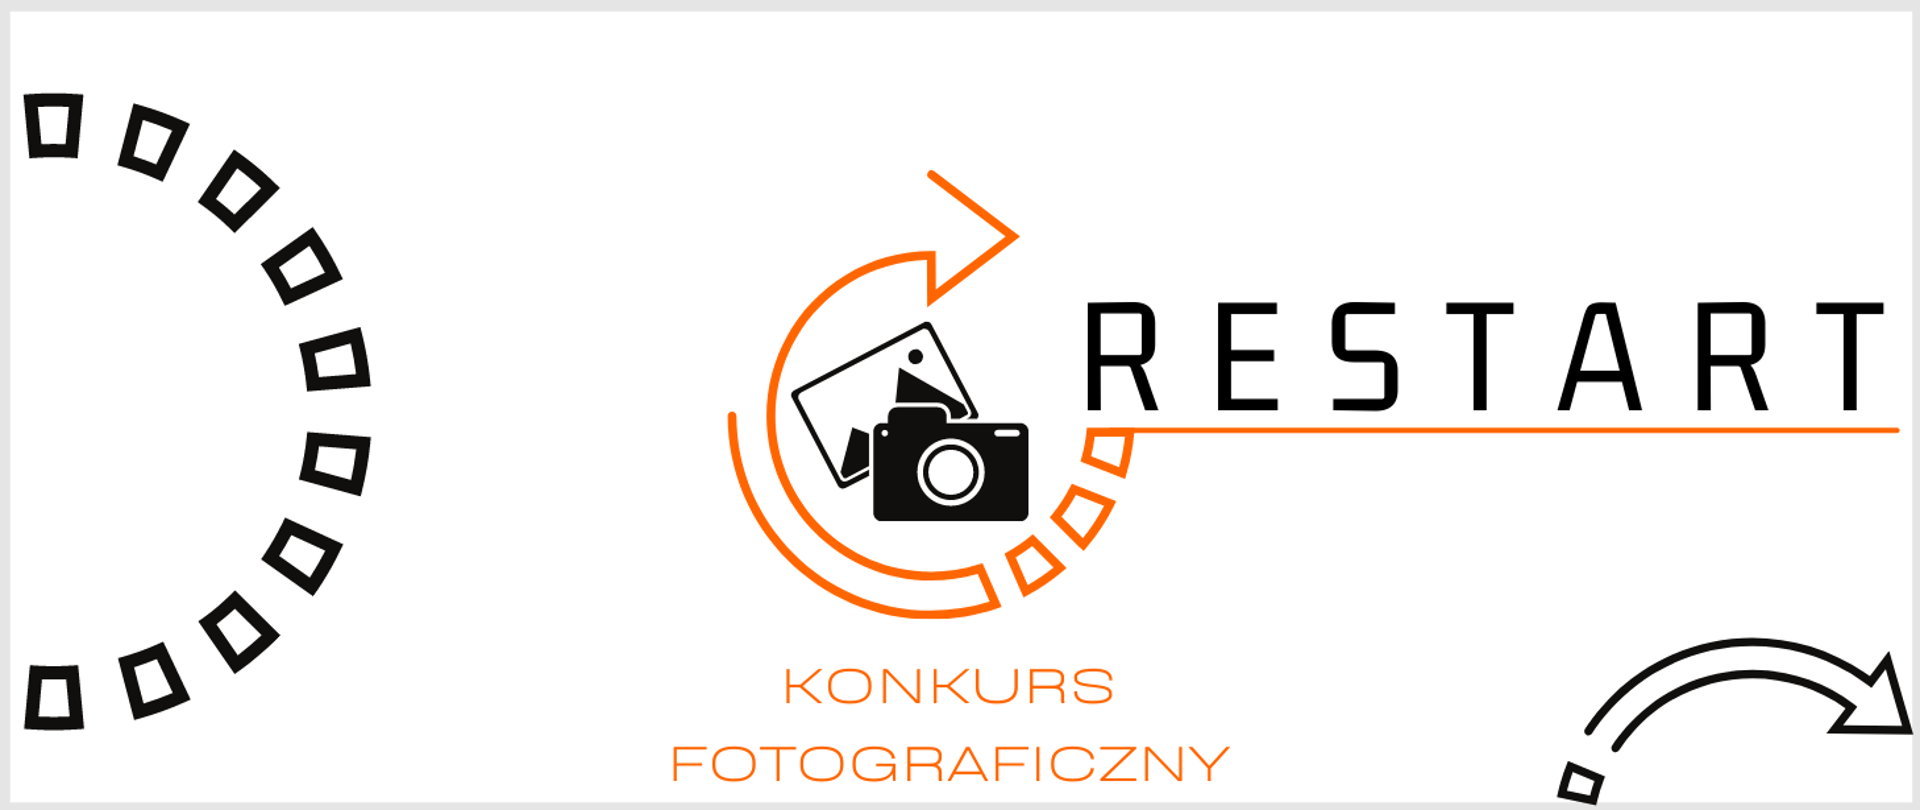 grafika, białe tło, na niej strzałki w kolorach czarnym i pomarańczowym, po środku aparat fotograficzny, po oby stronach napis konkurs fotograficzny restart